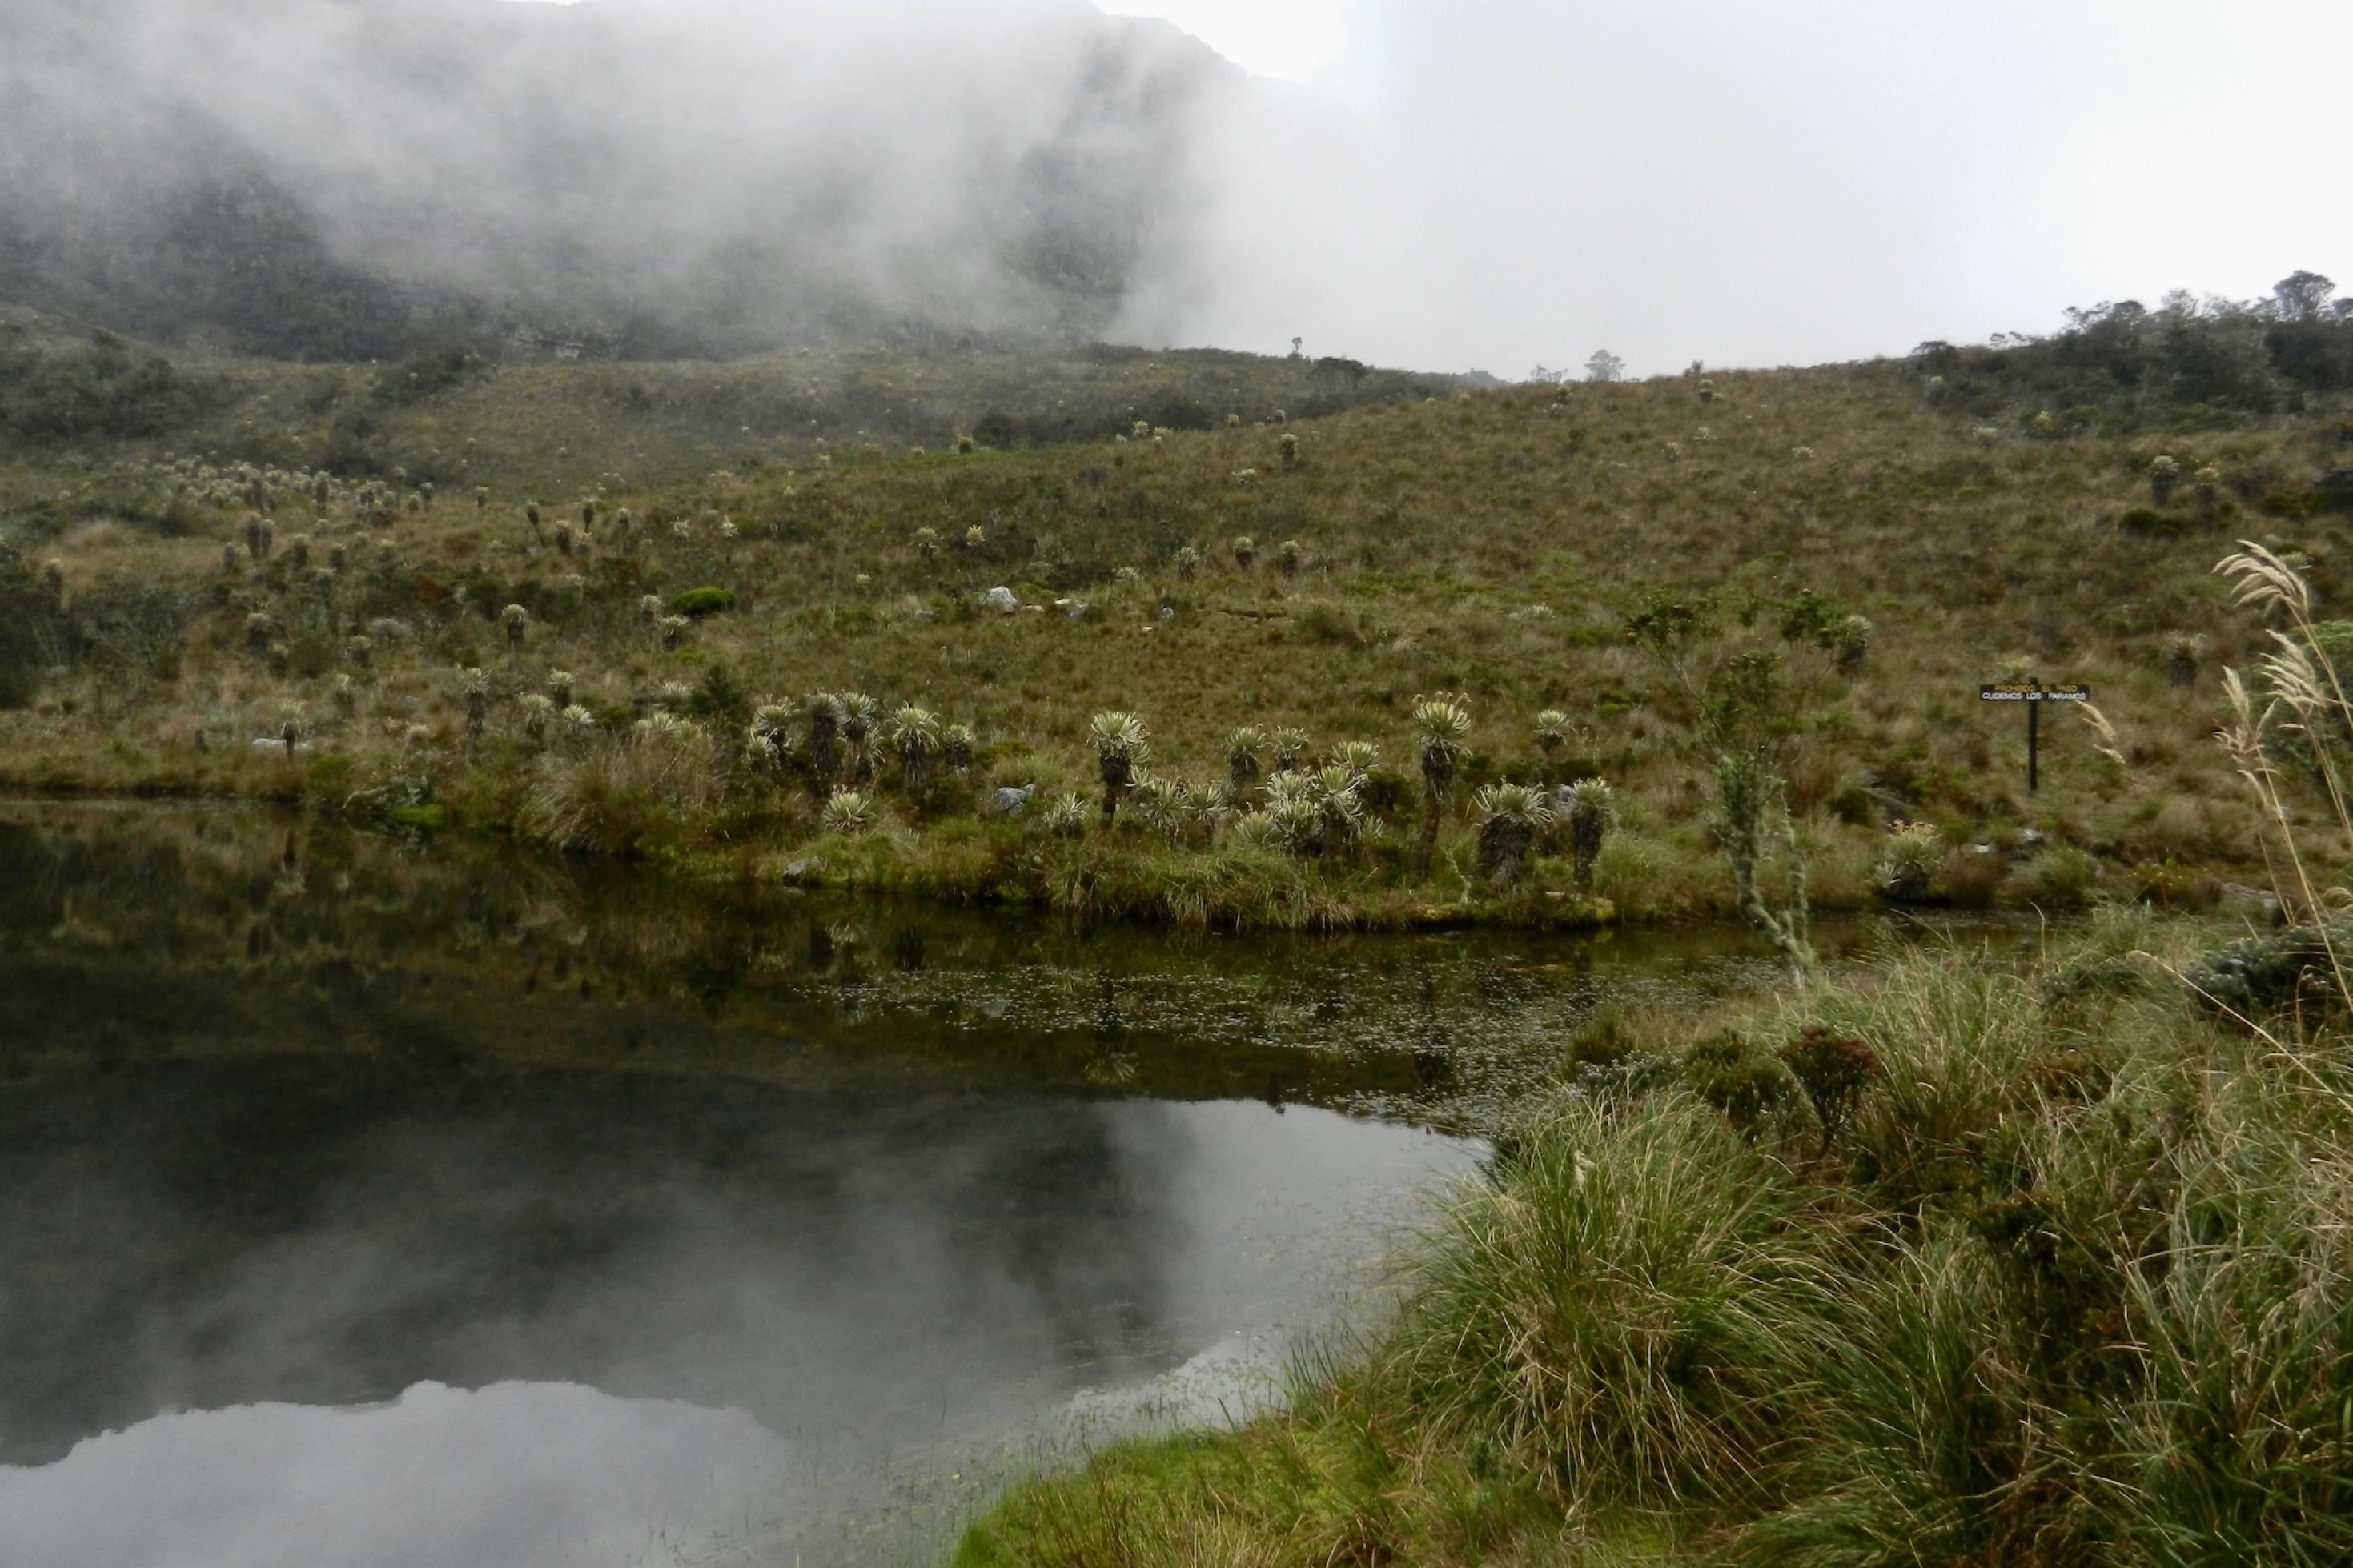 See mit dunklem Wasser hoch auf einem Berg. Um ihn ist eine Landschaft mit niedriger Vegetation, aus der Schopfrosettenbäumchen herausstechen. Eine Nebelwand bewegt sich auf den See zu.